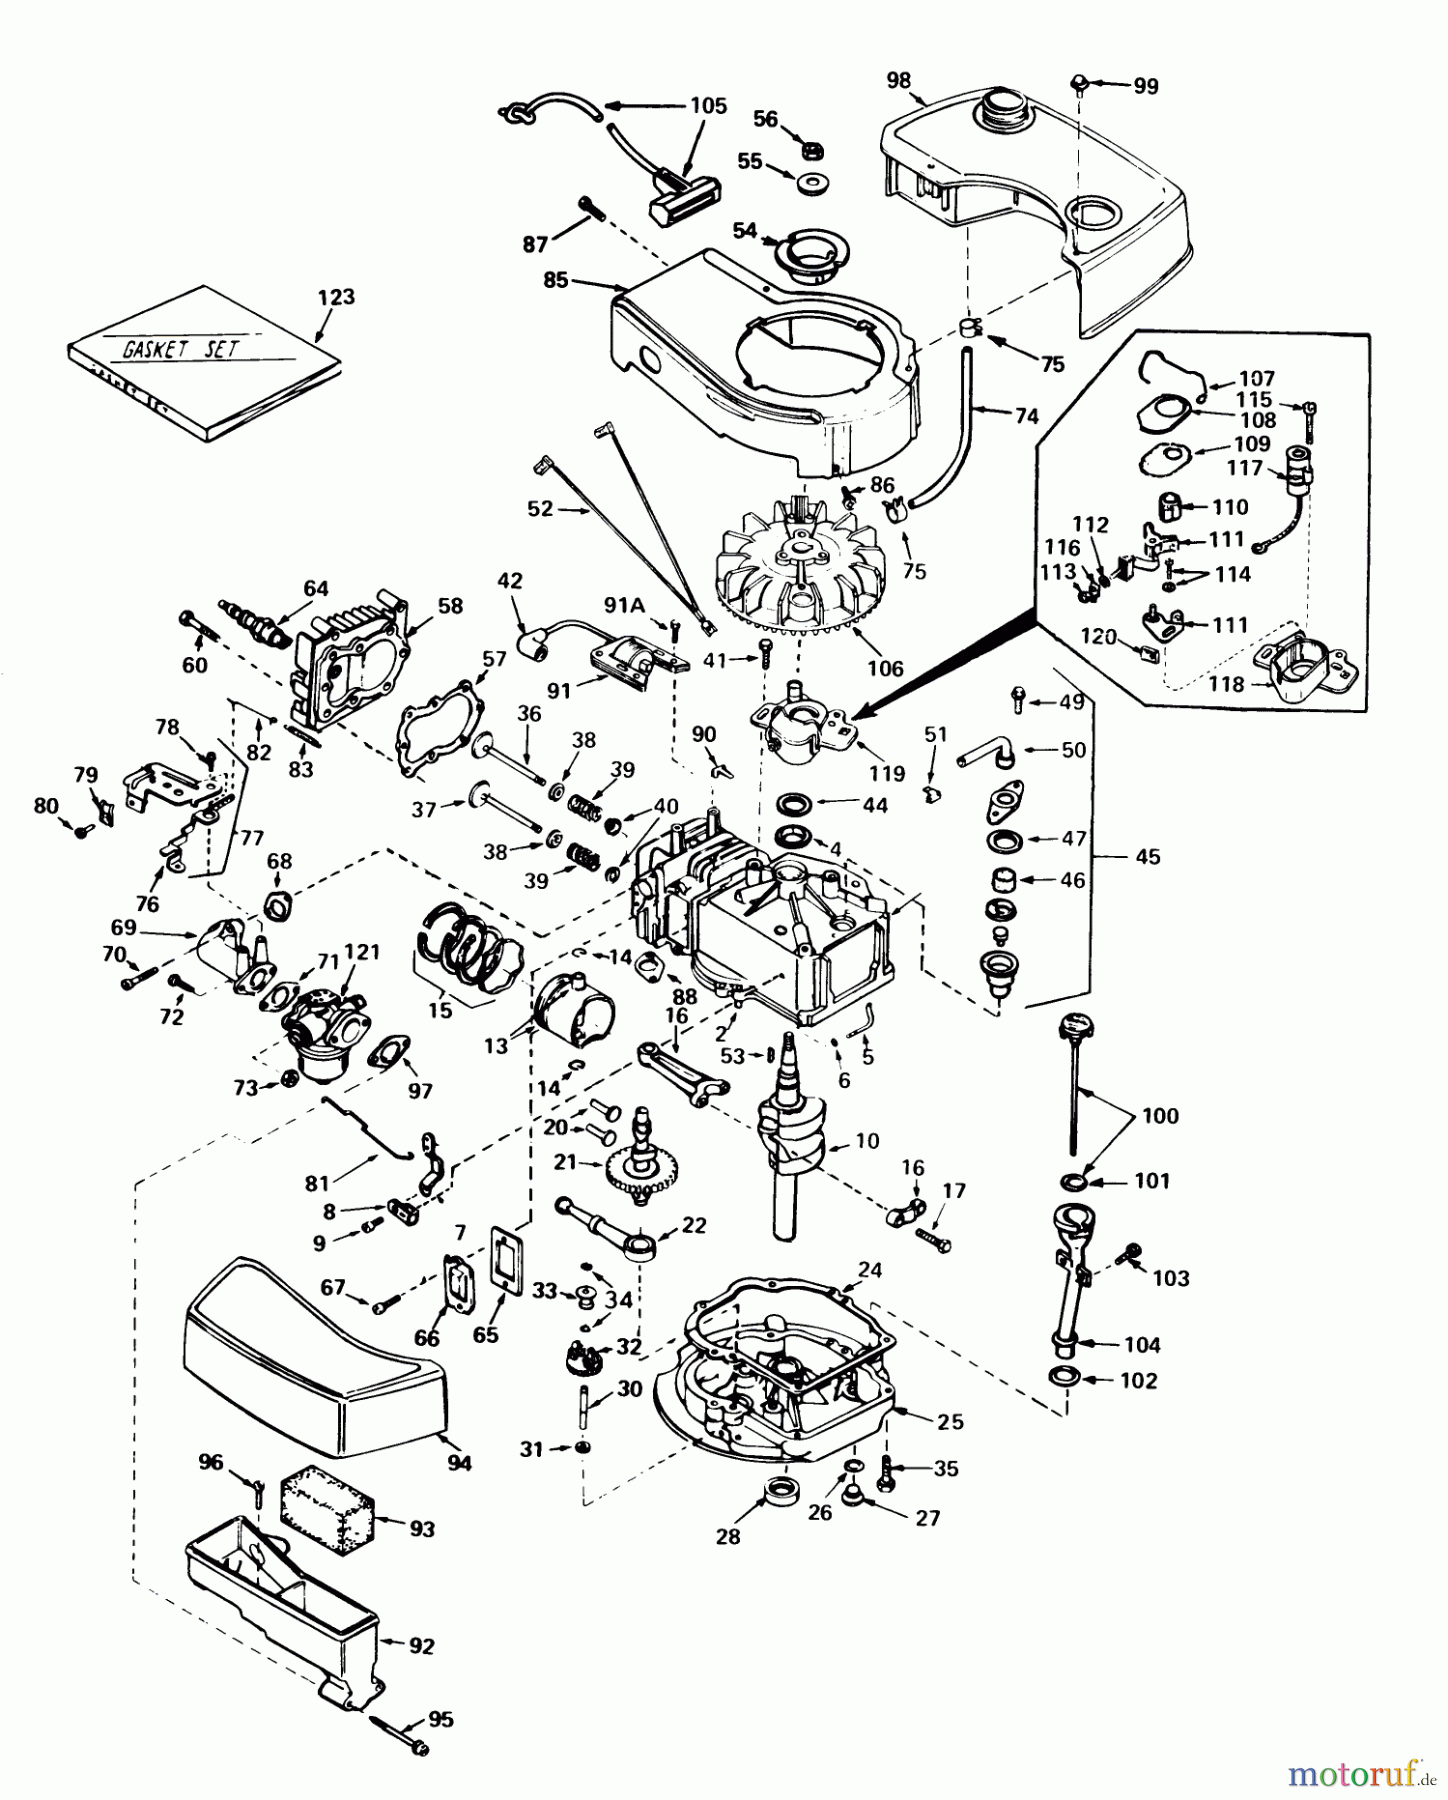  Toro Neu Mowers, Walk-Behind Seite 1 18085 - Toro Lawnmower, 1979 (9000001-9999999) ENGINE TECUMSEH MODEL NO. TNT 100-10060C